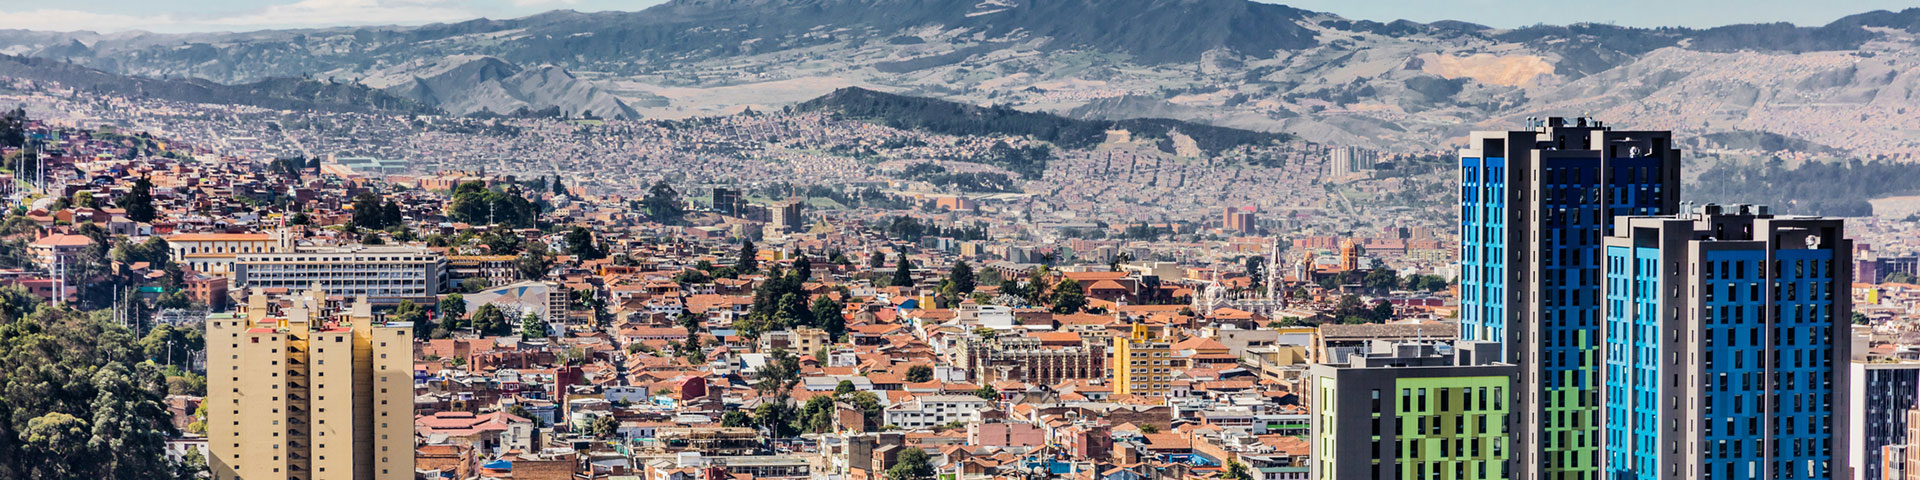 Luftaufnahme von Bogota.